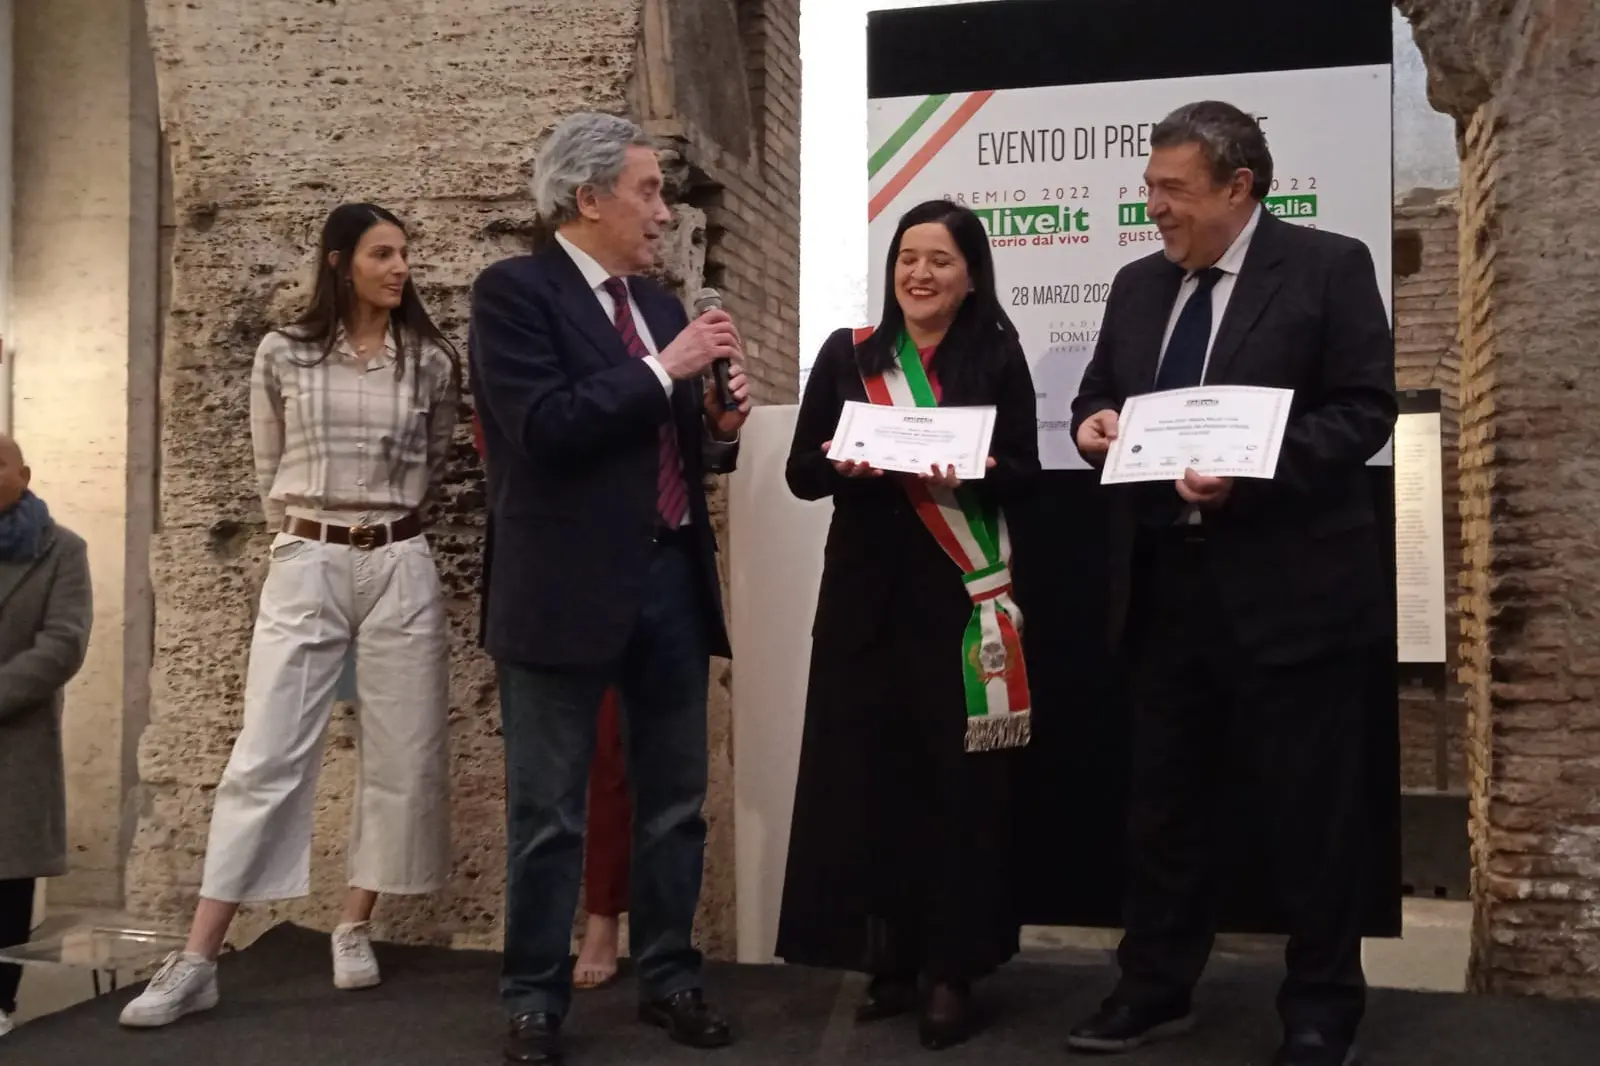 La consegna del premio alla sindaca di Arborea Manuela Pintus e al presidente della Pro loco Paolo Sanneris (foto Rizzetto)